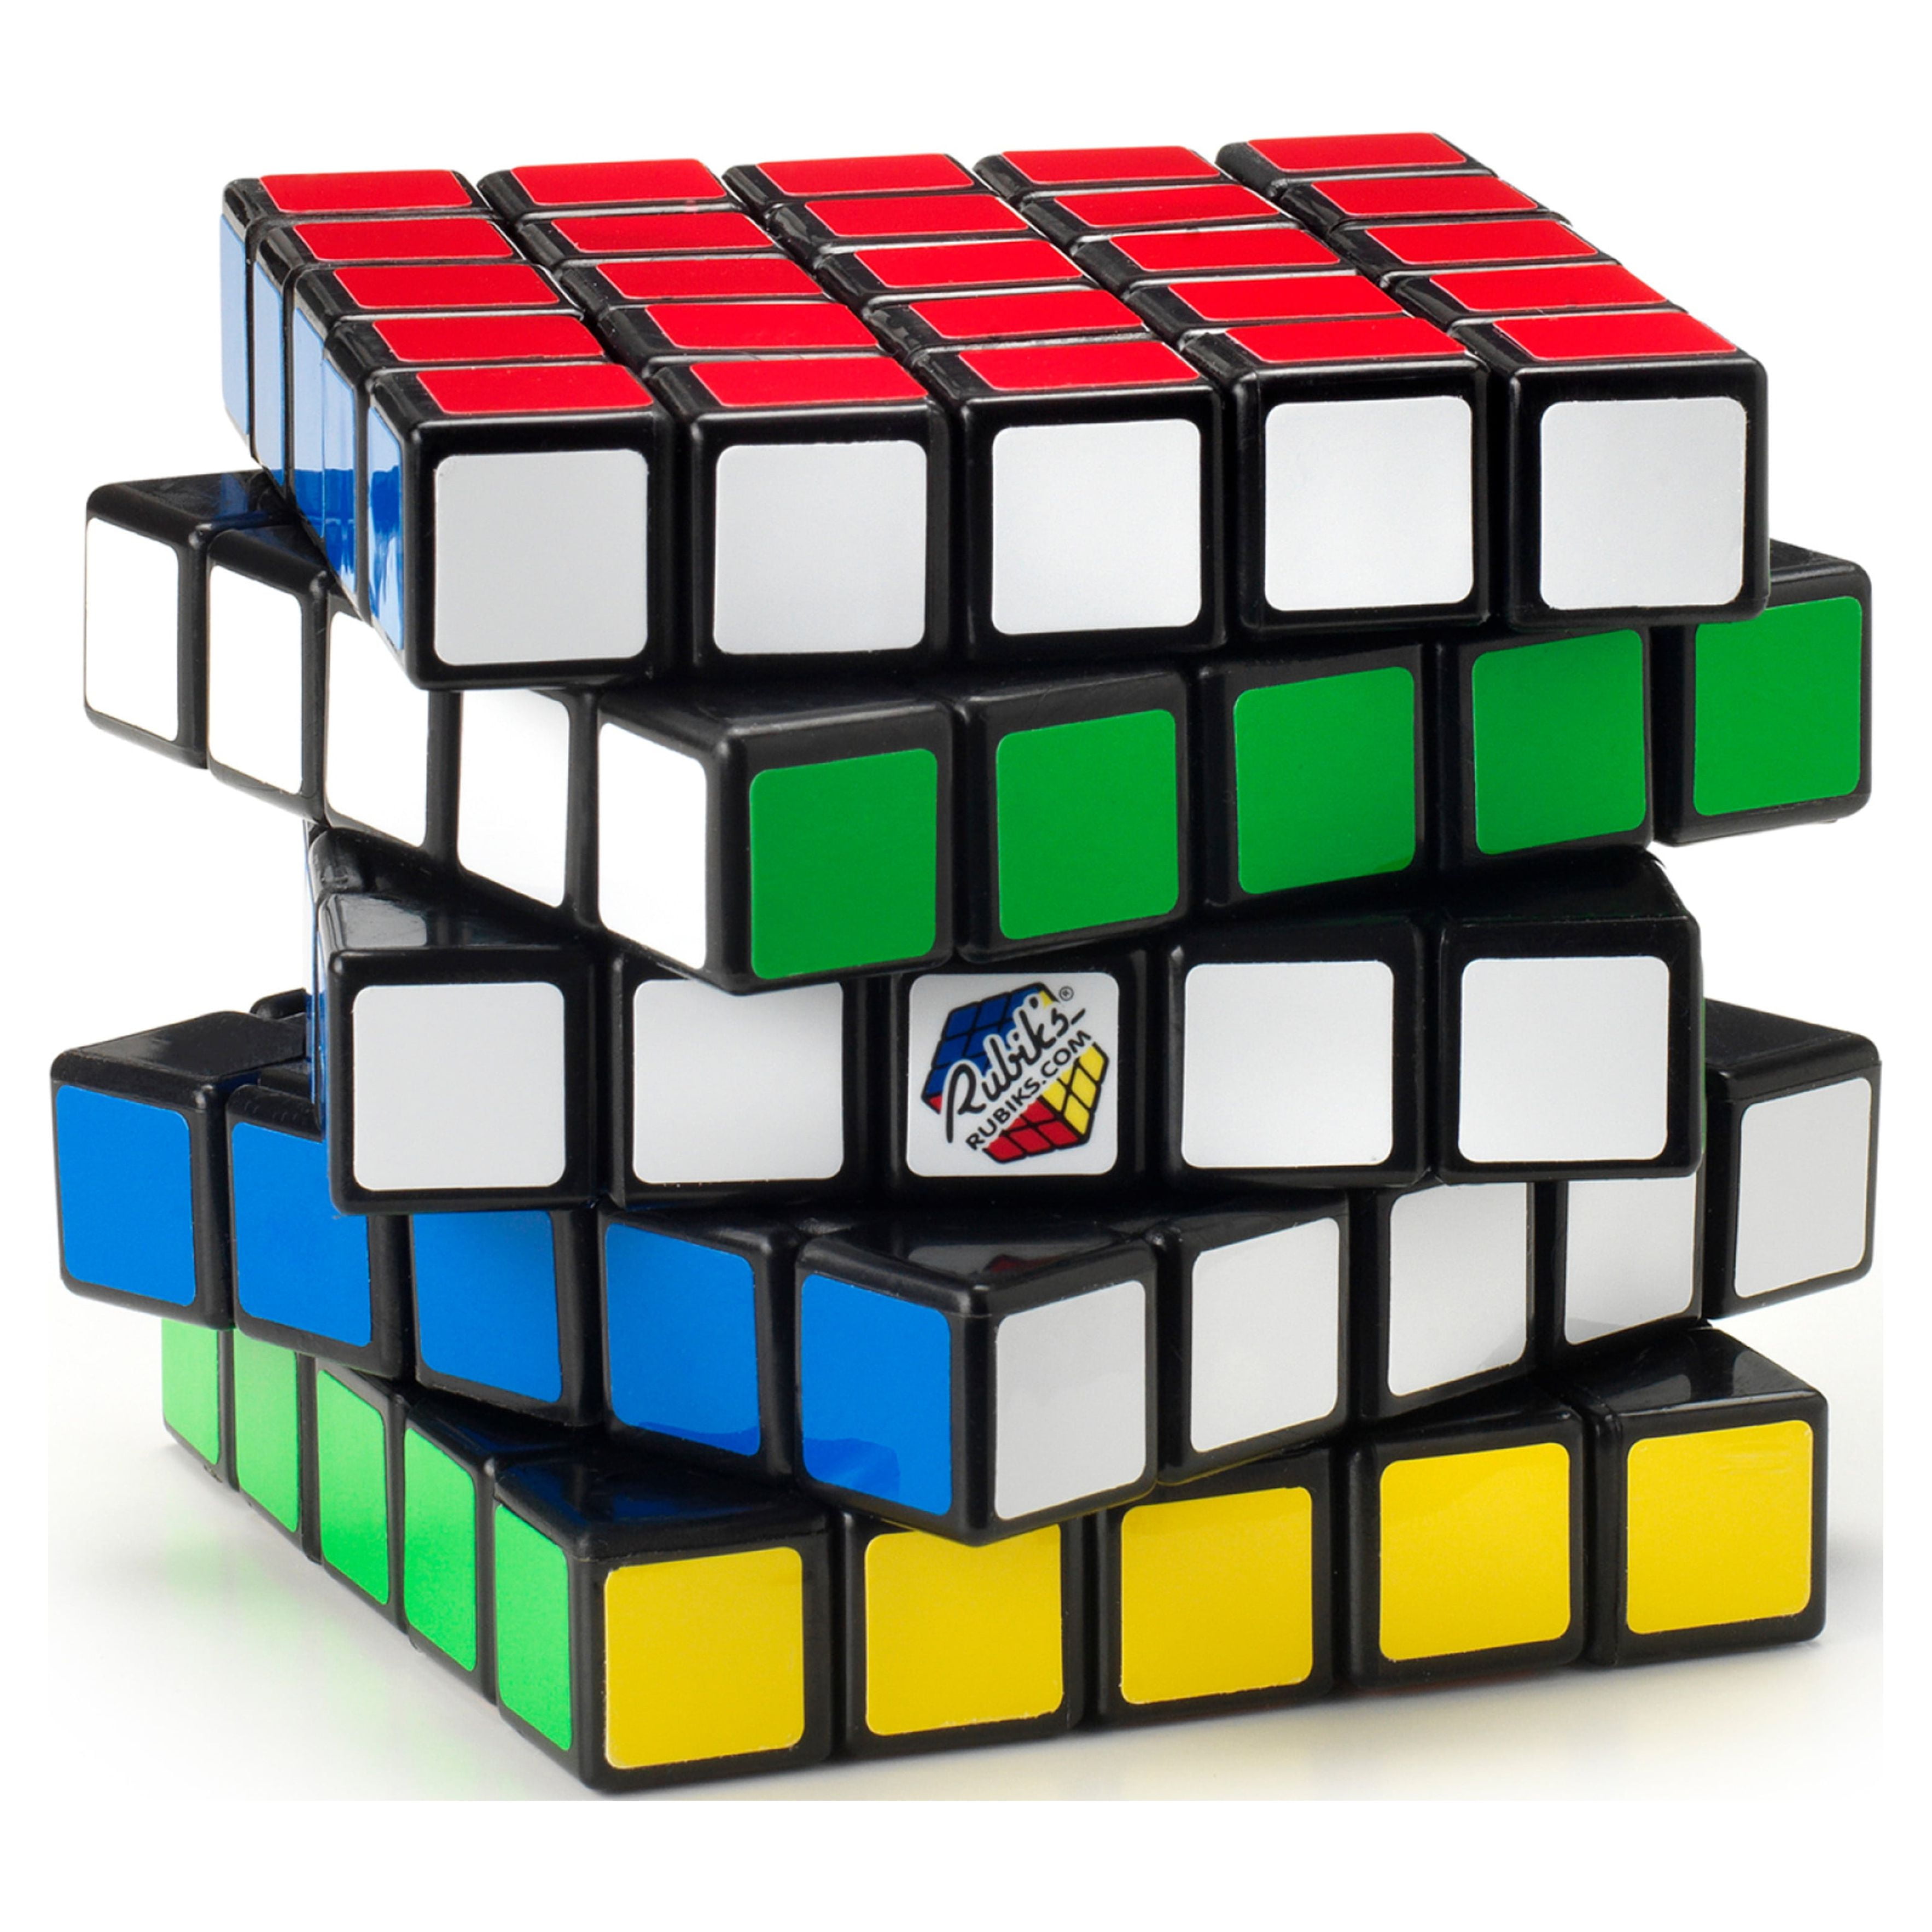 Rubik's 5 X 5 Professor